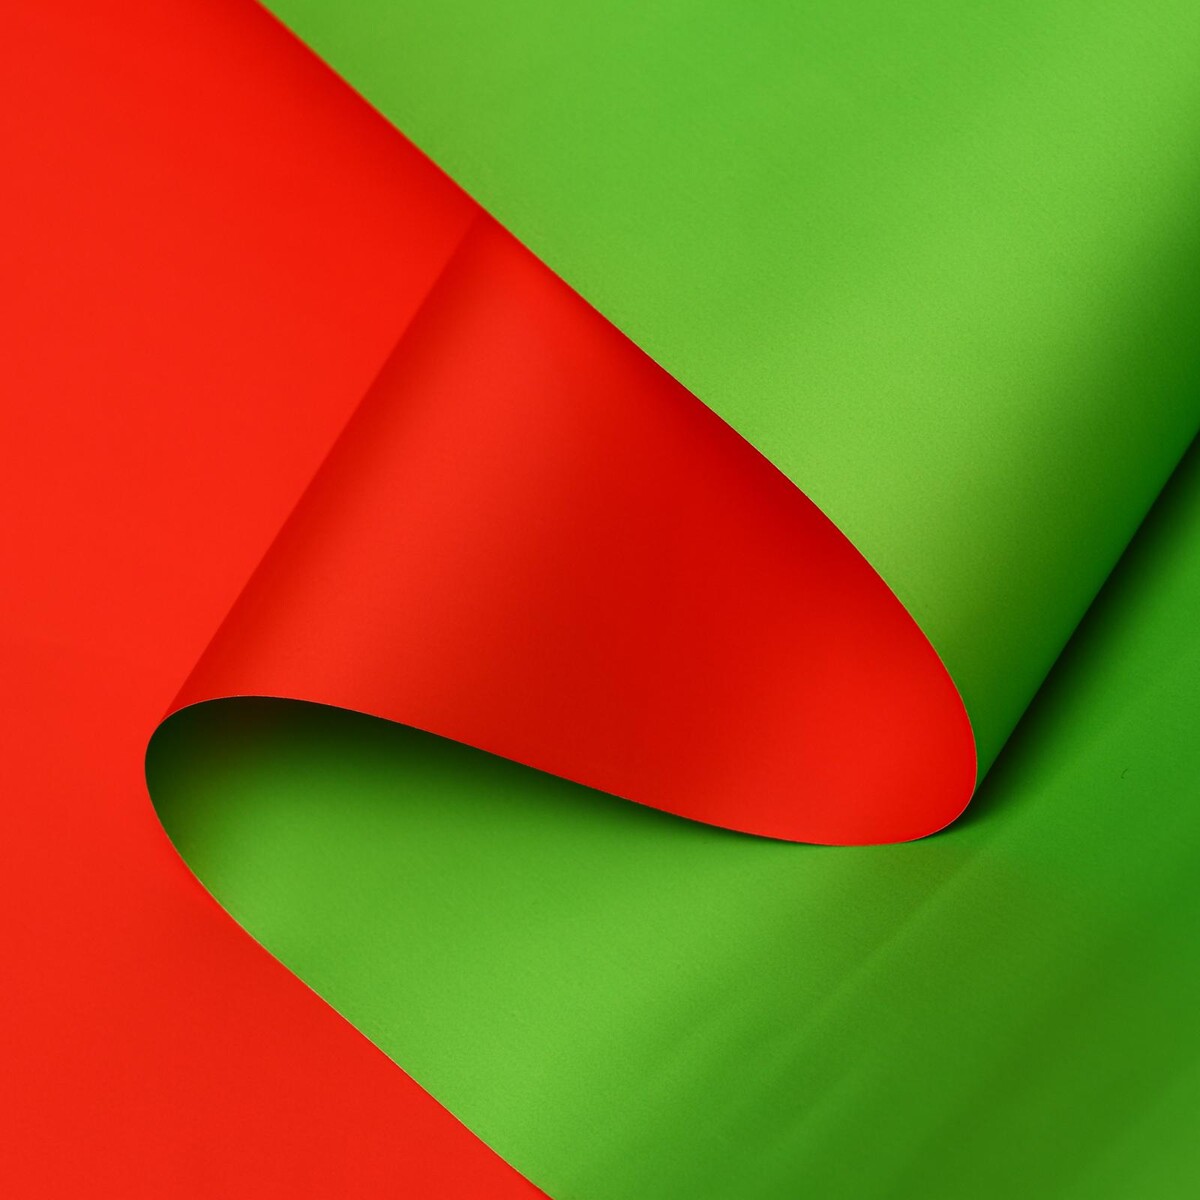 Пленка матовая, красный, зеленый, 0.58 х 10 м пленка матовая базовые а серо зеленый 0 5 х 10 м 65 мкм